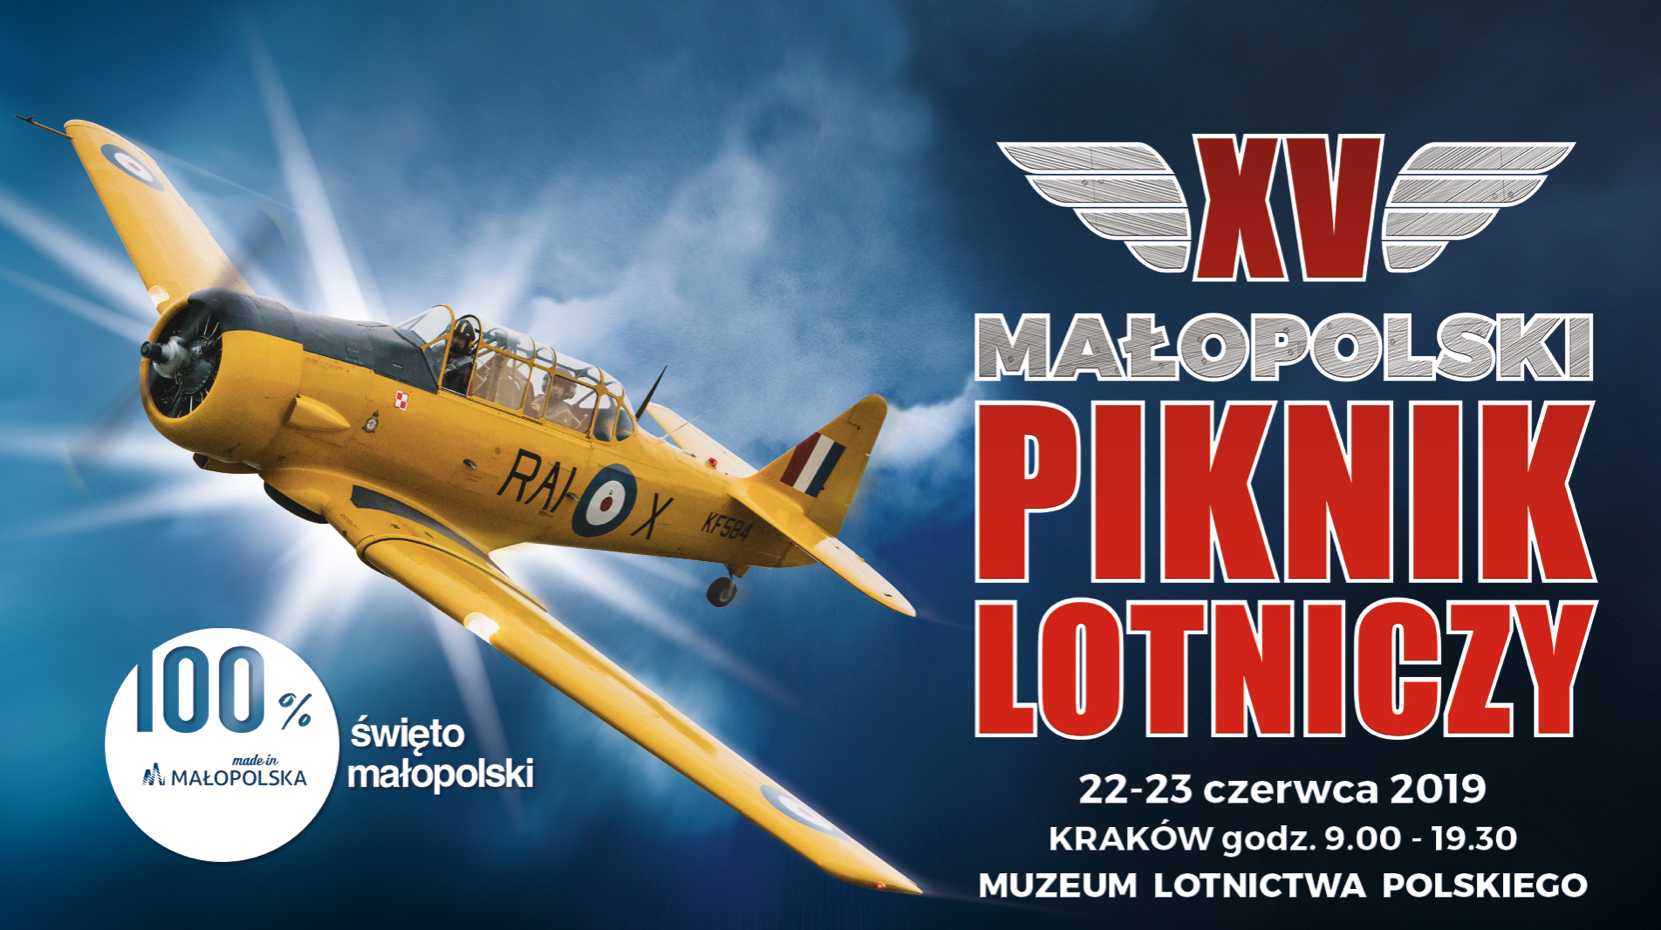 Plakat XV Małopolskiego Pikniku Lotniczego. Czyżyny 2019 rok.